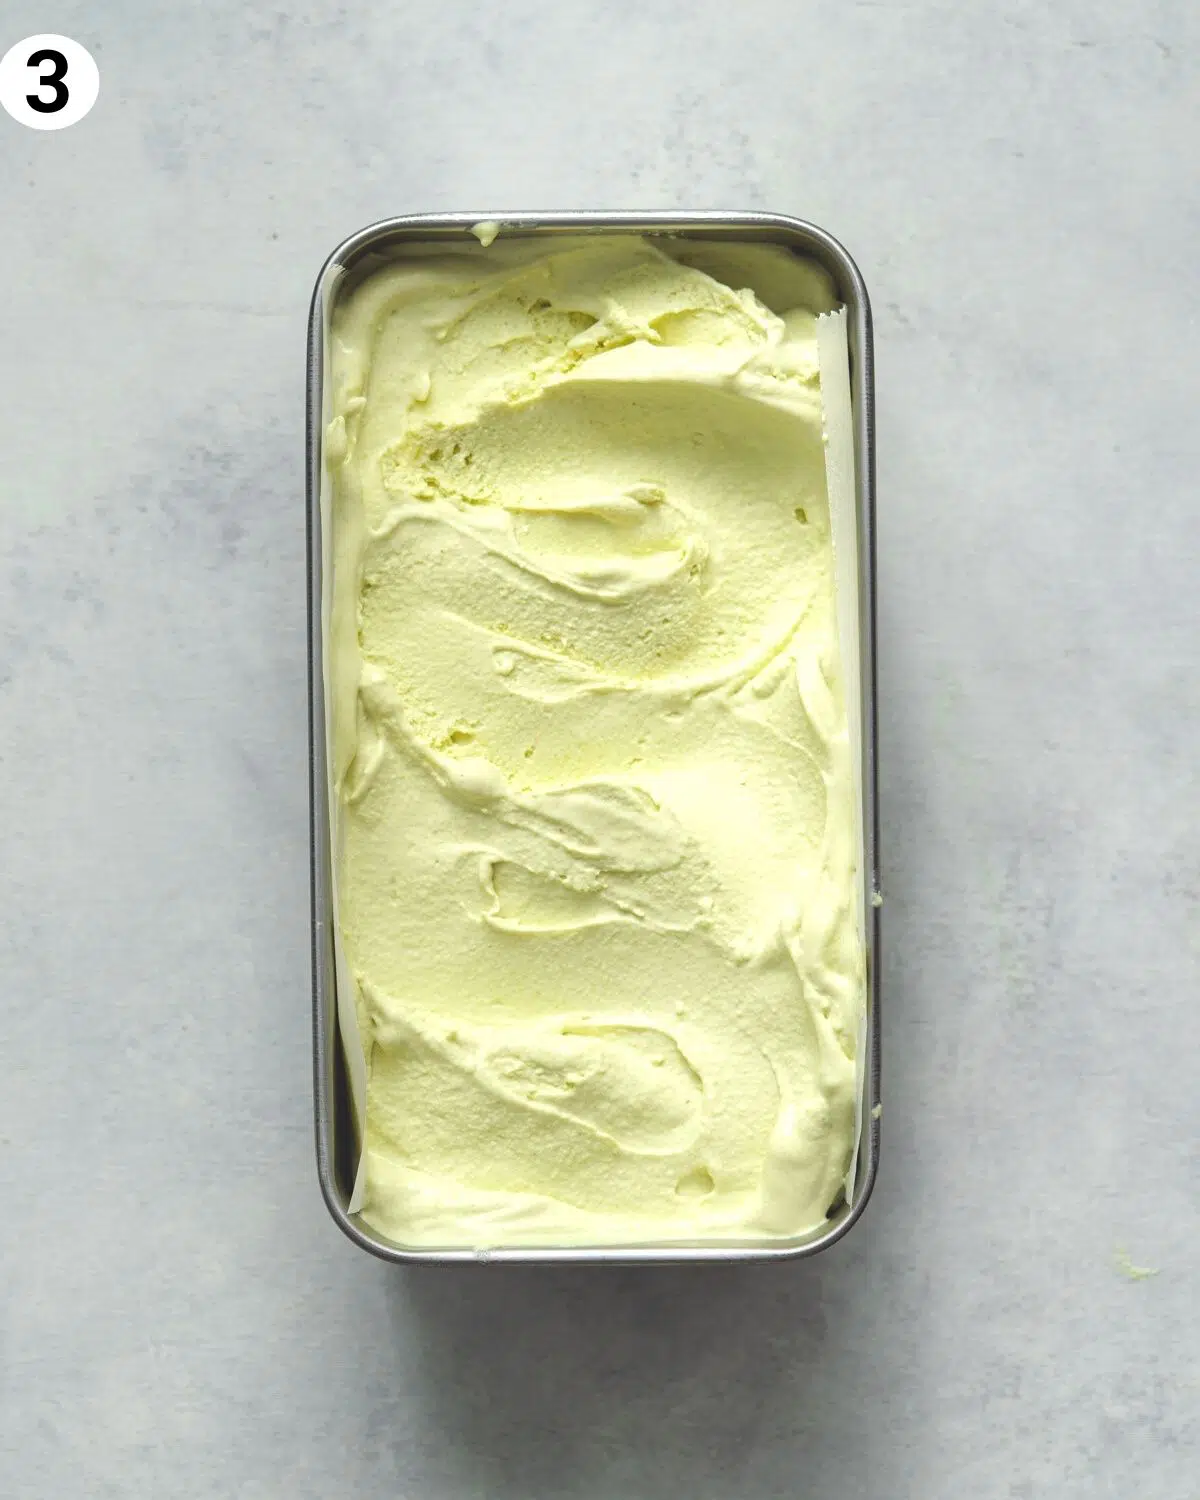 vegan pistachio ice cream in a metal tub.